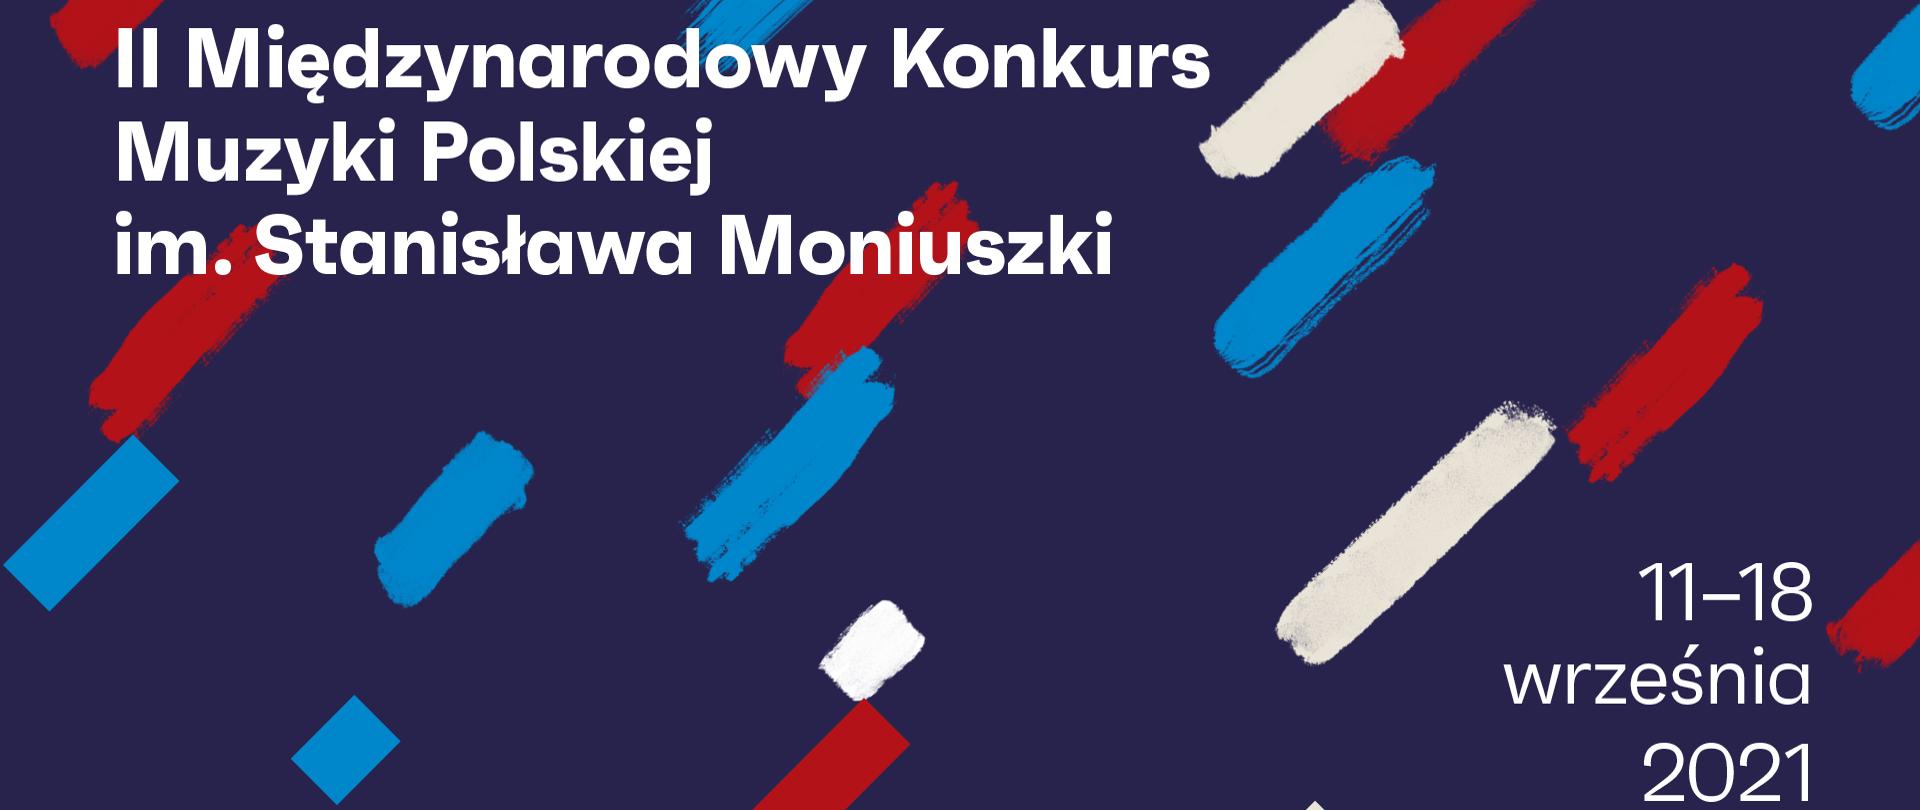 II Międzynarodowego Konkursu Muzyki Polskiej im. Stanisława Moniuszki